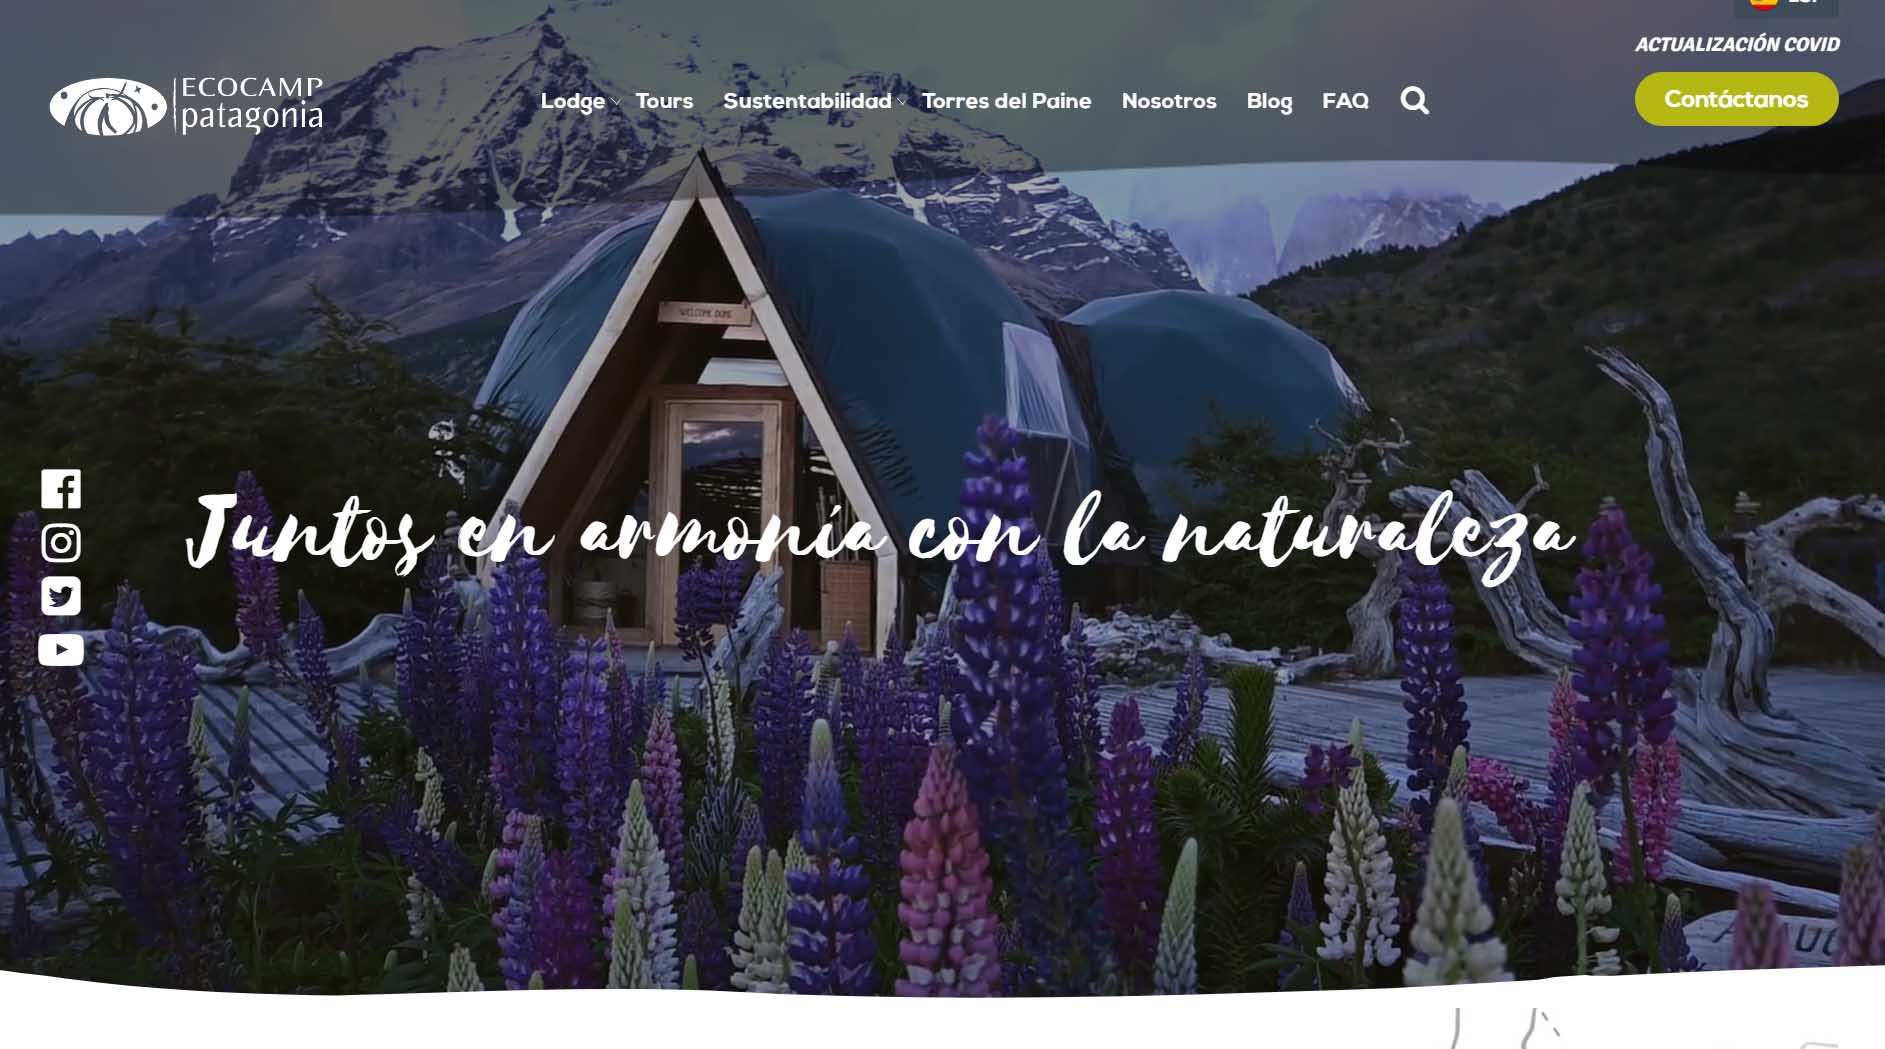 publicidad hoteles: Ecocamp Patagonia